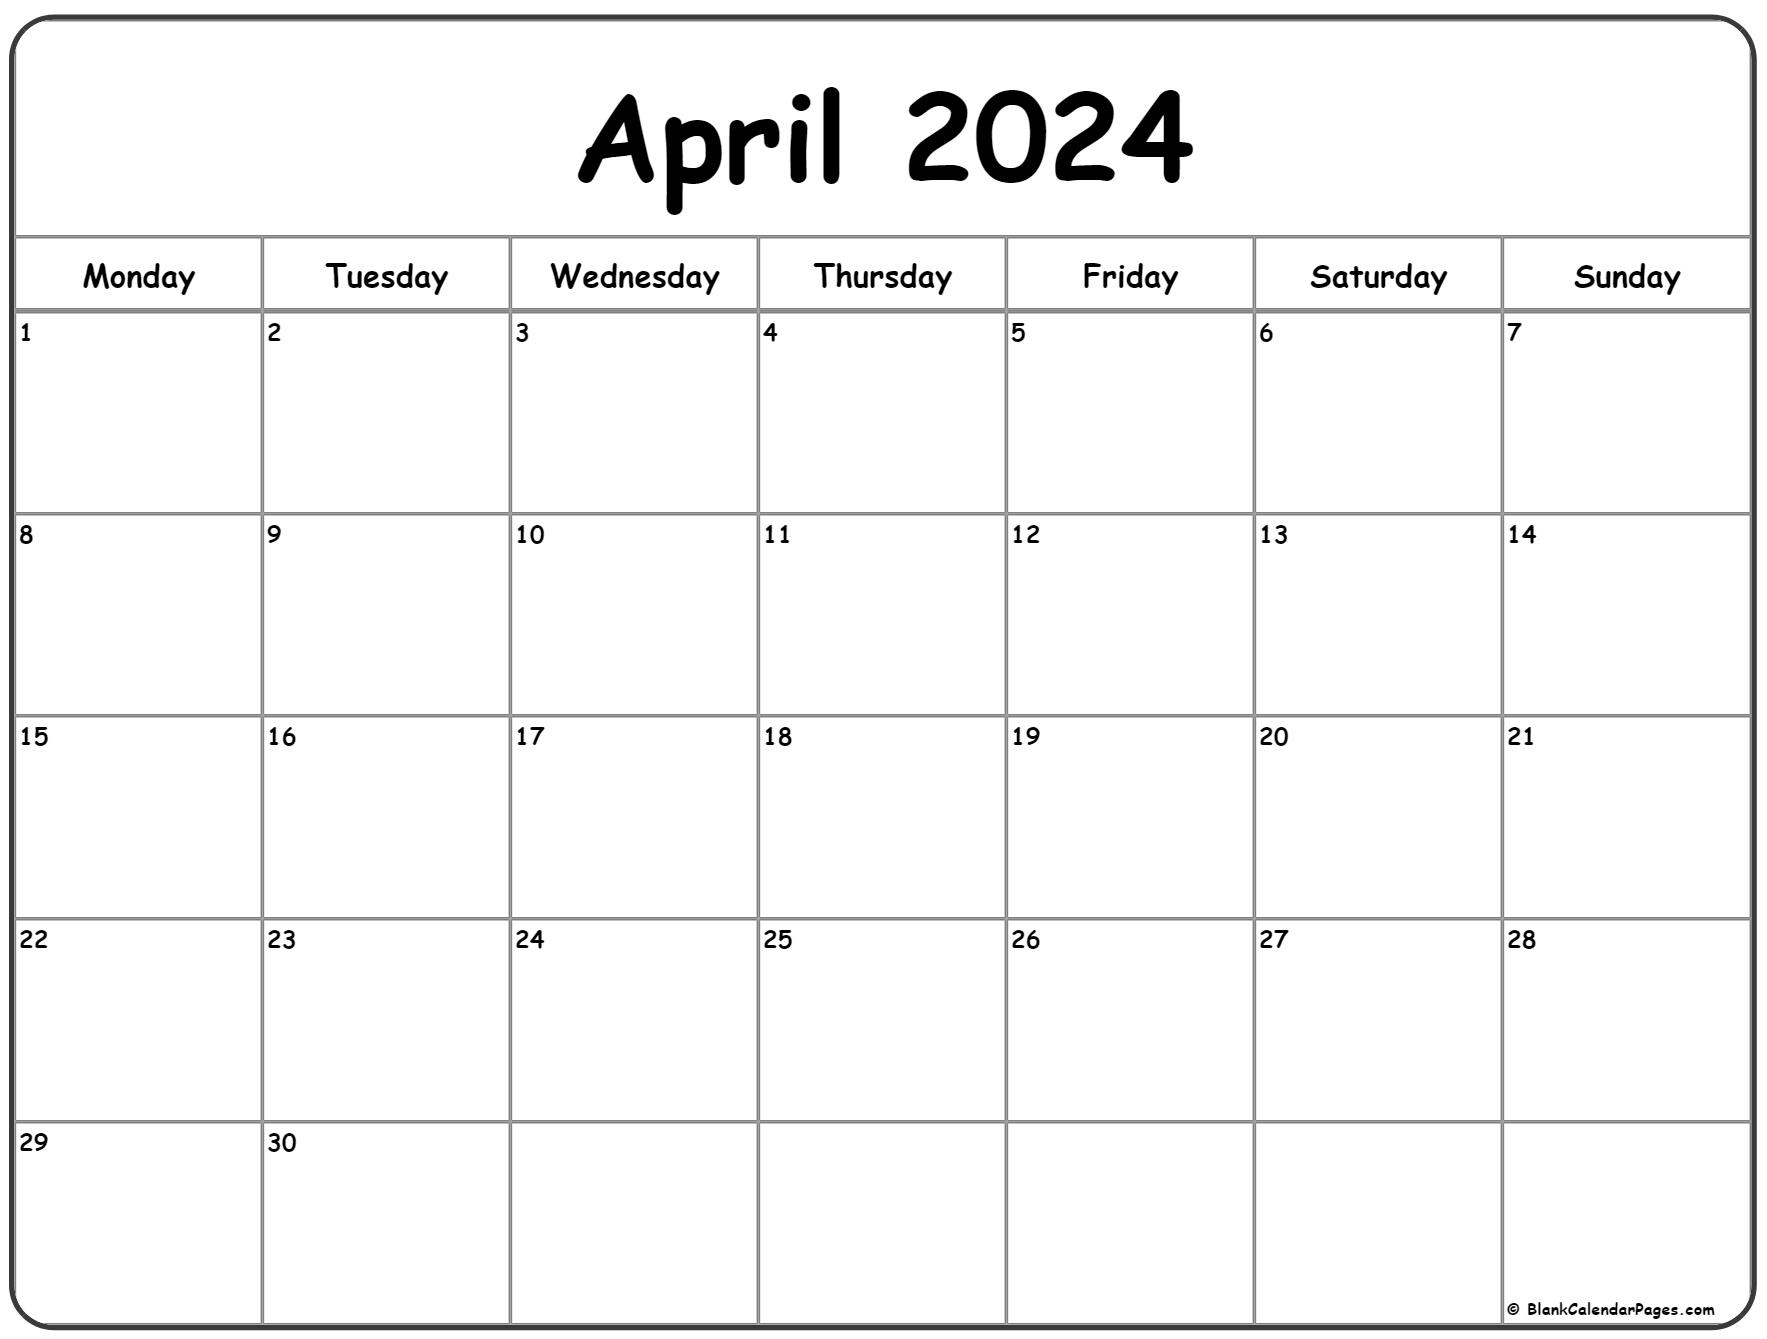 April 2024 Monday Calendar | Monday To Sunday | Printable Calendar 2024 April